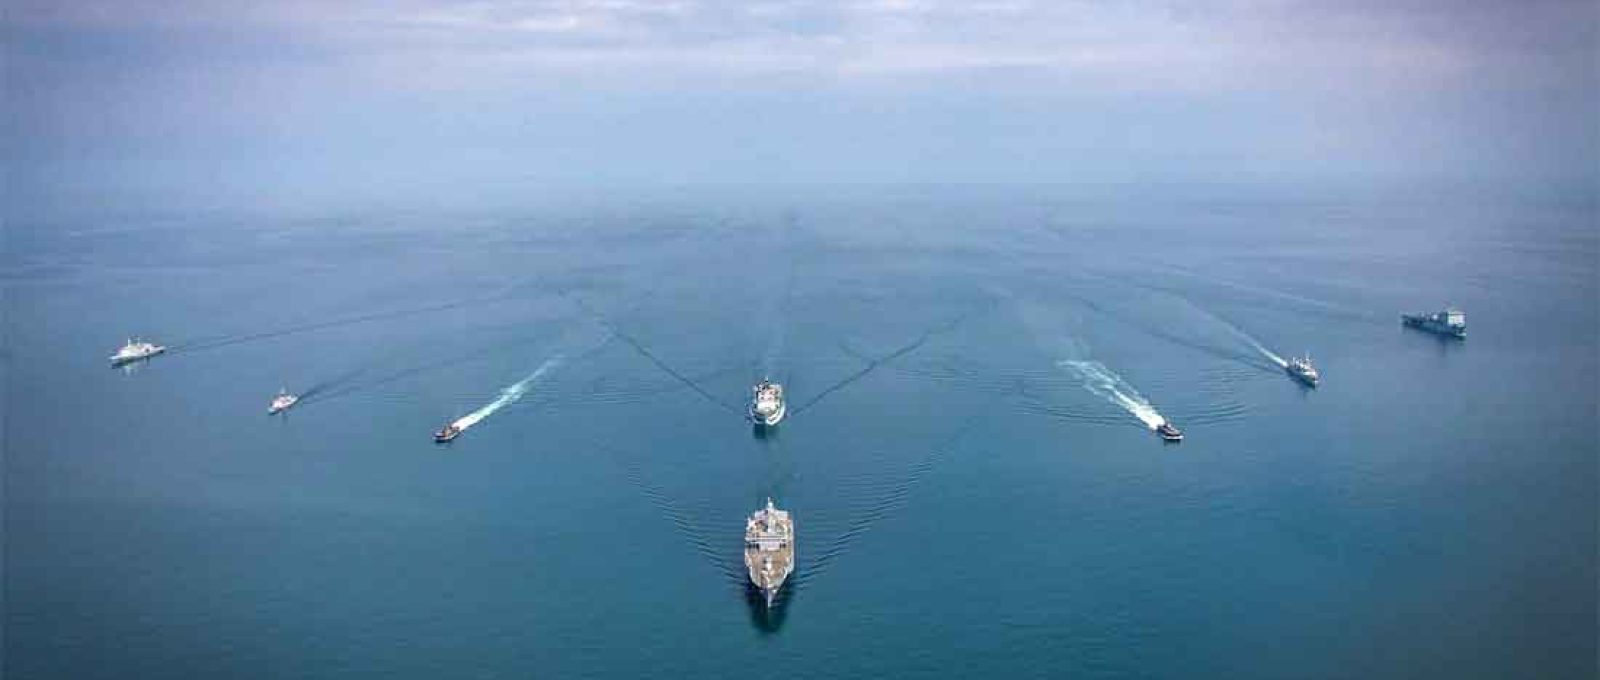 Marinhas de países da OTAN na costa da Dinamarca em 6 de junho de 2021 durante o exercício BALTOPS 50 (Foto: Bryan Underwood/Royal Canadian Navy).